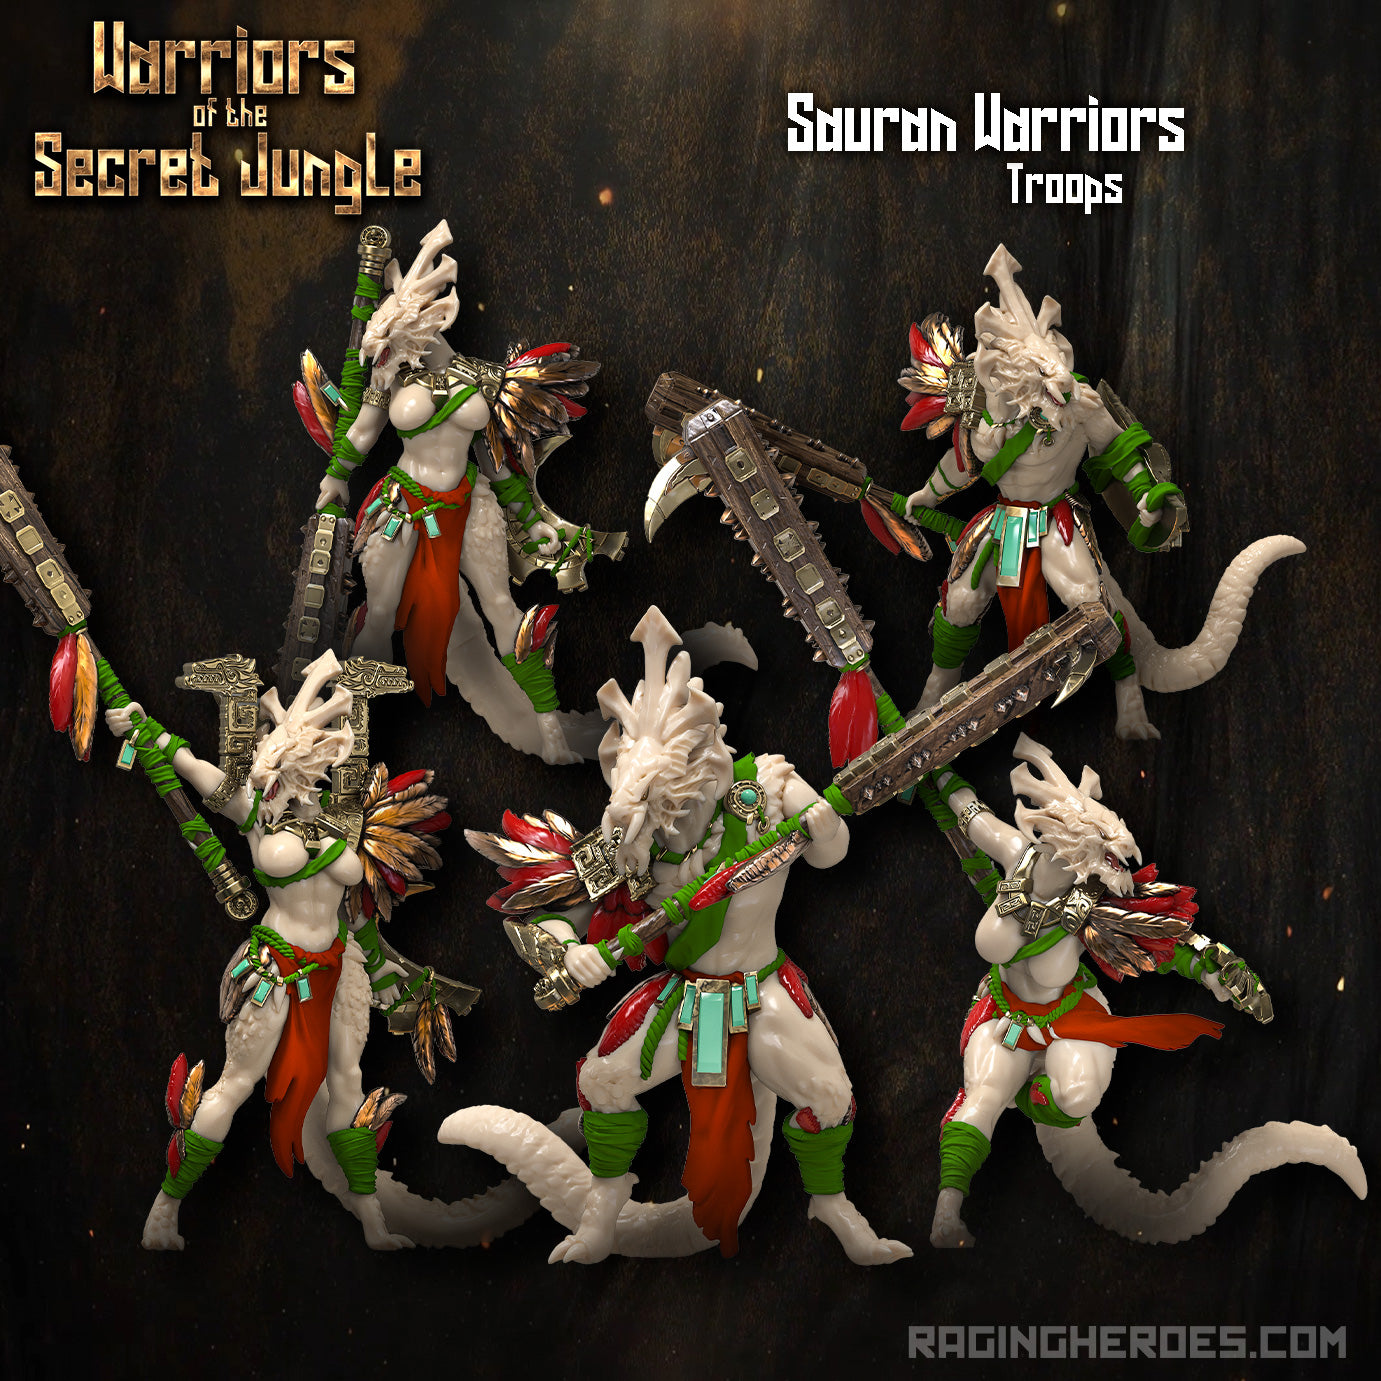 Sauran Warriors, Troops (WSJ - F)